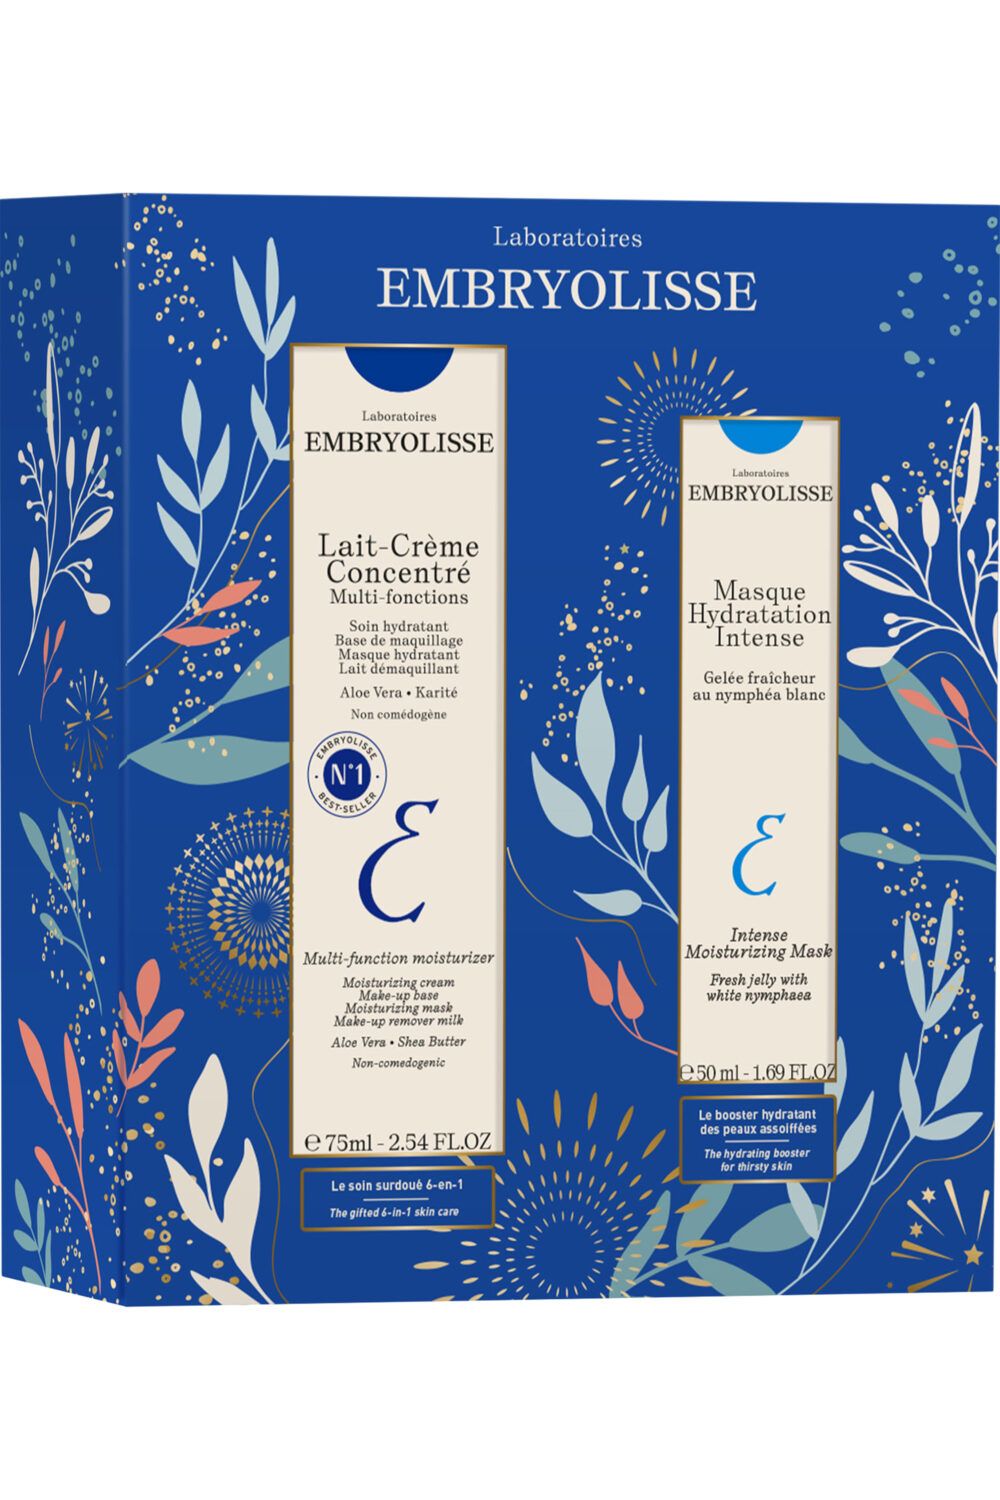 Embryolisse - Coffret Lait-Crème Concentré et Masque Hydratation Intense